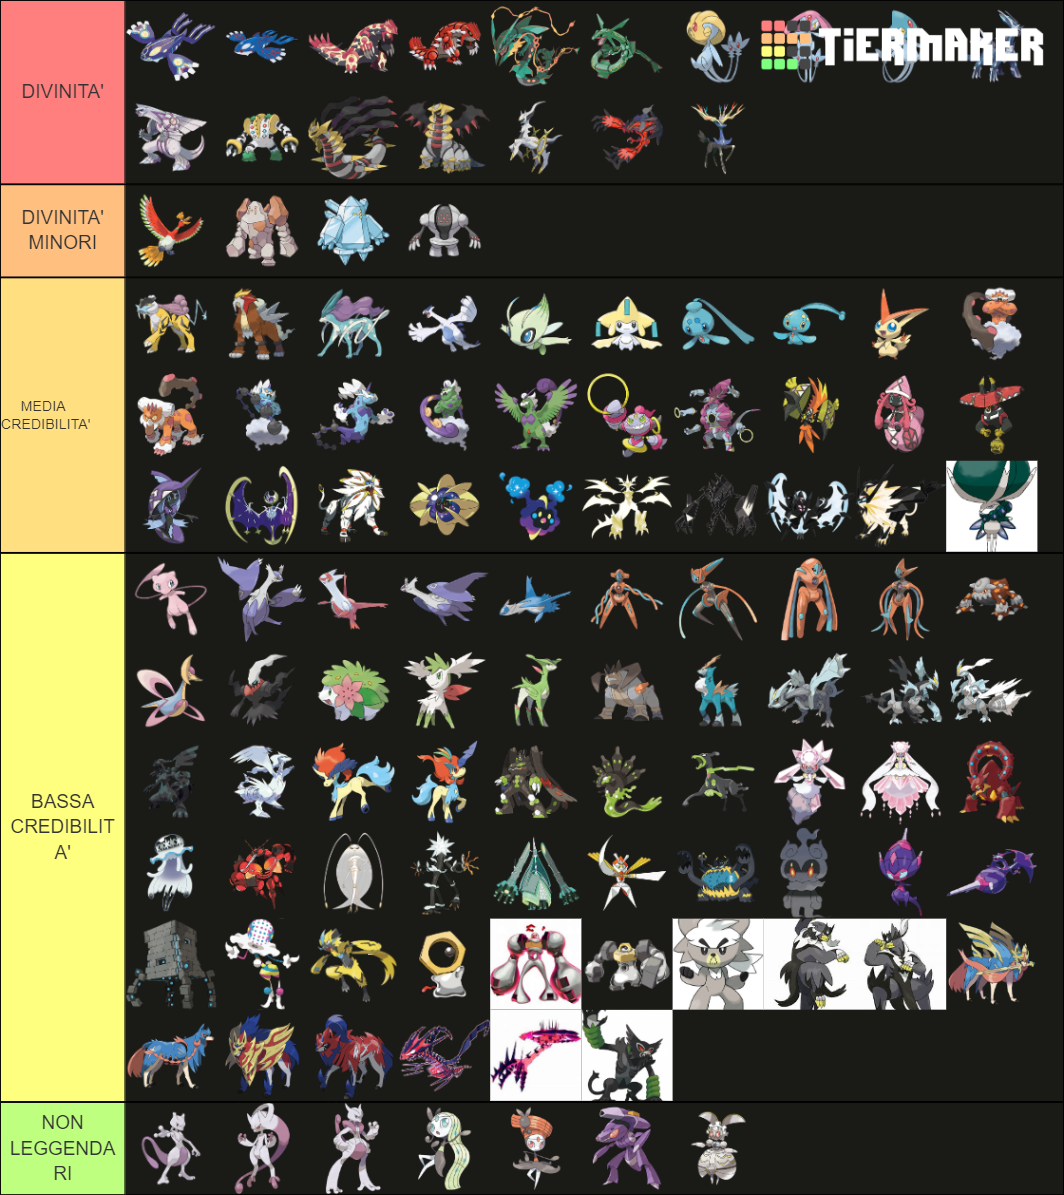 All legendary pokemon Tier List Rankings) TierMaker